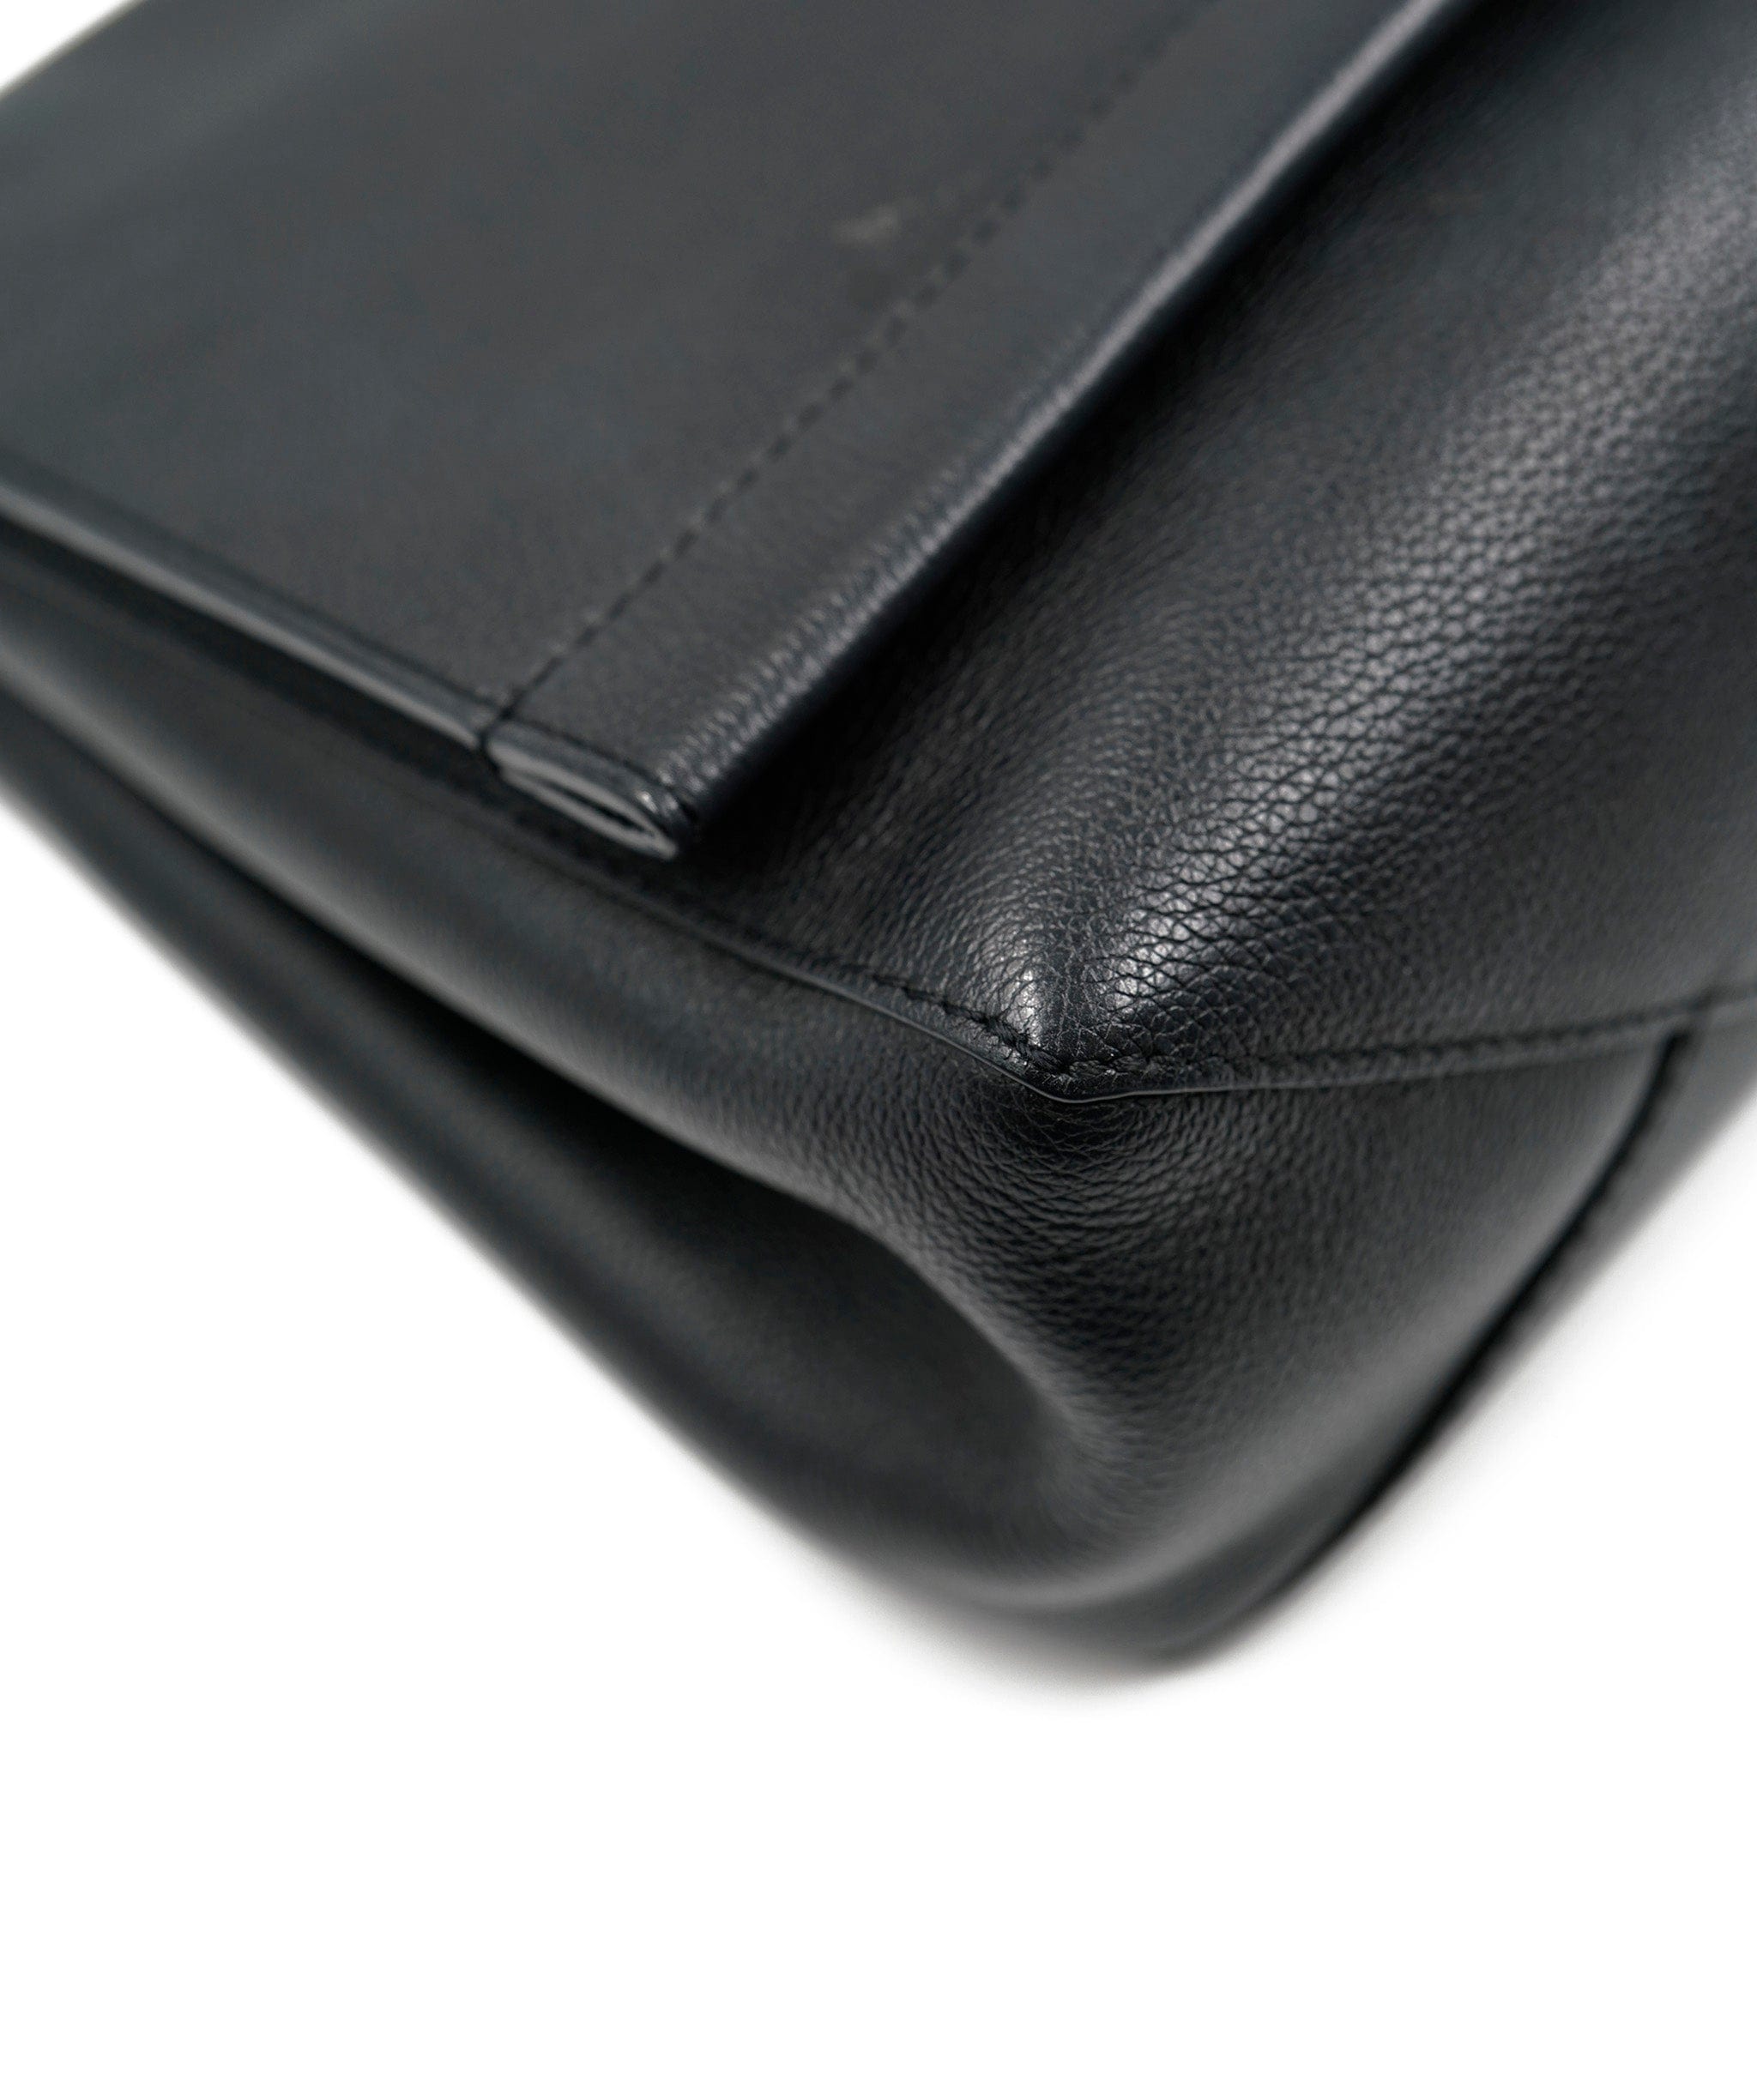 Louis Vuitton Louis Vuitton Black Leather Top Handle Bag  AGC1438